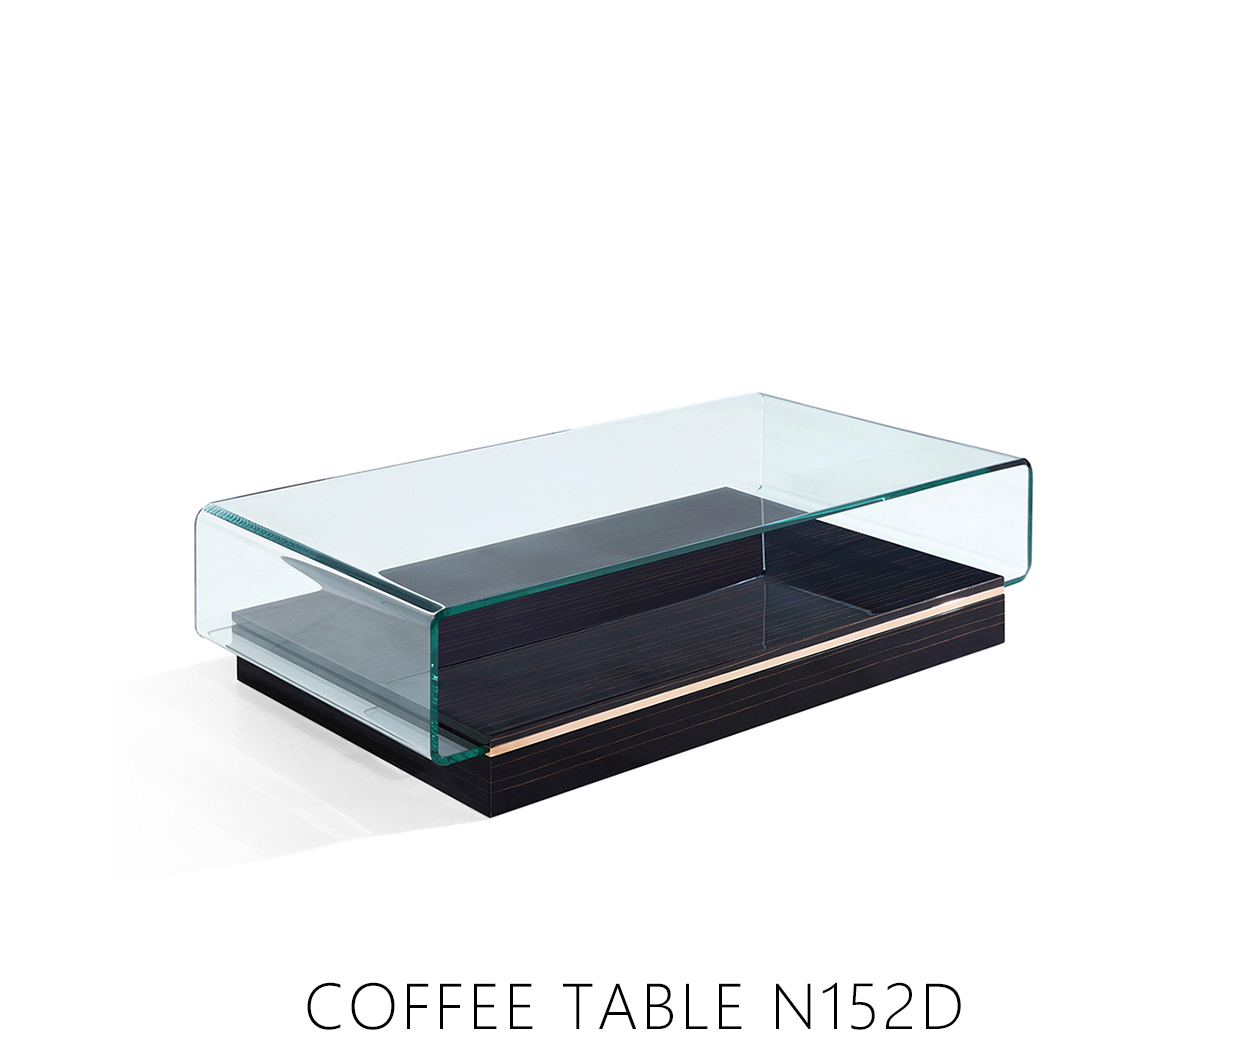 COFFEE TABLE N152D